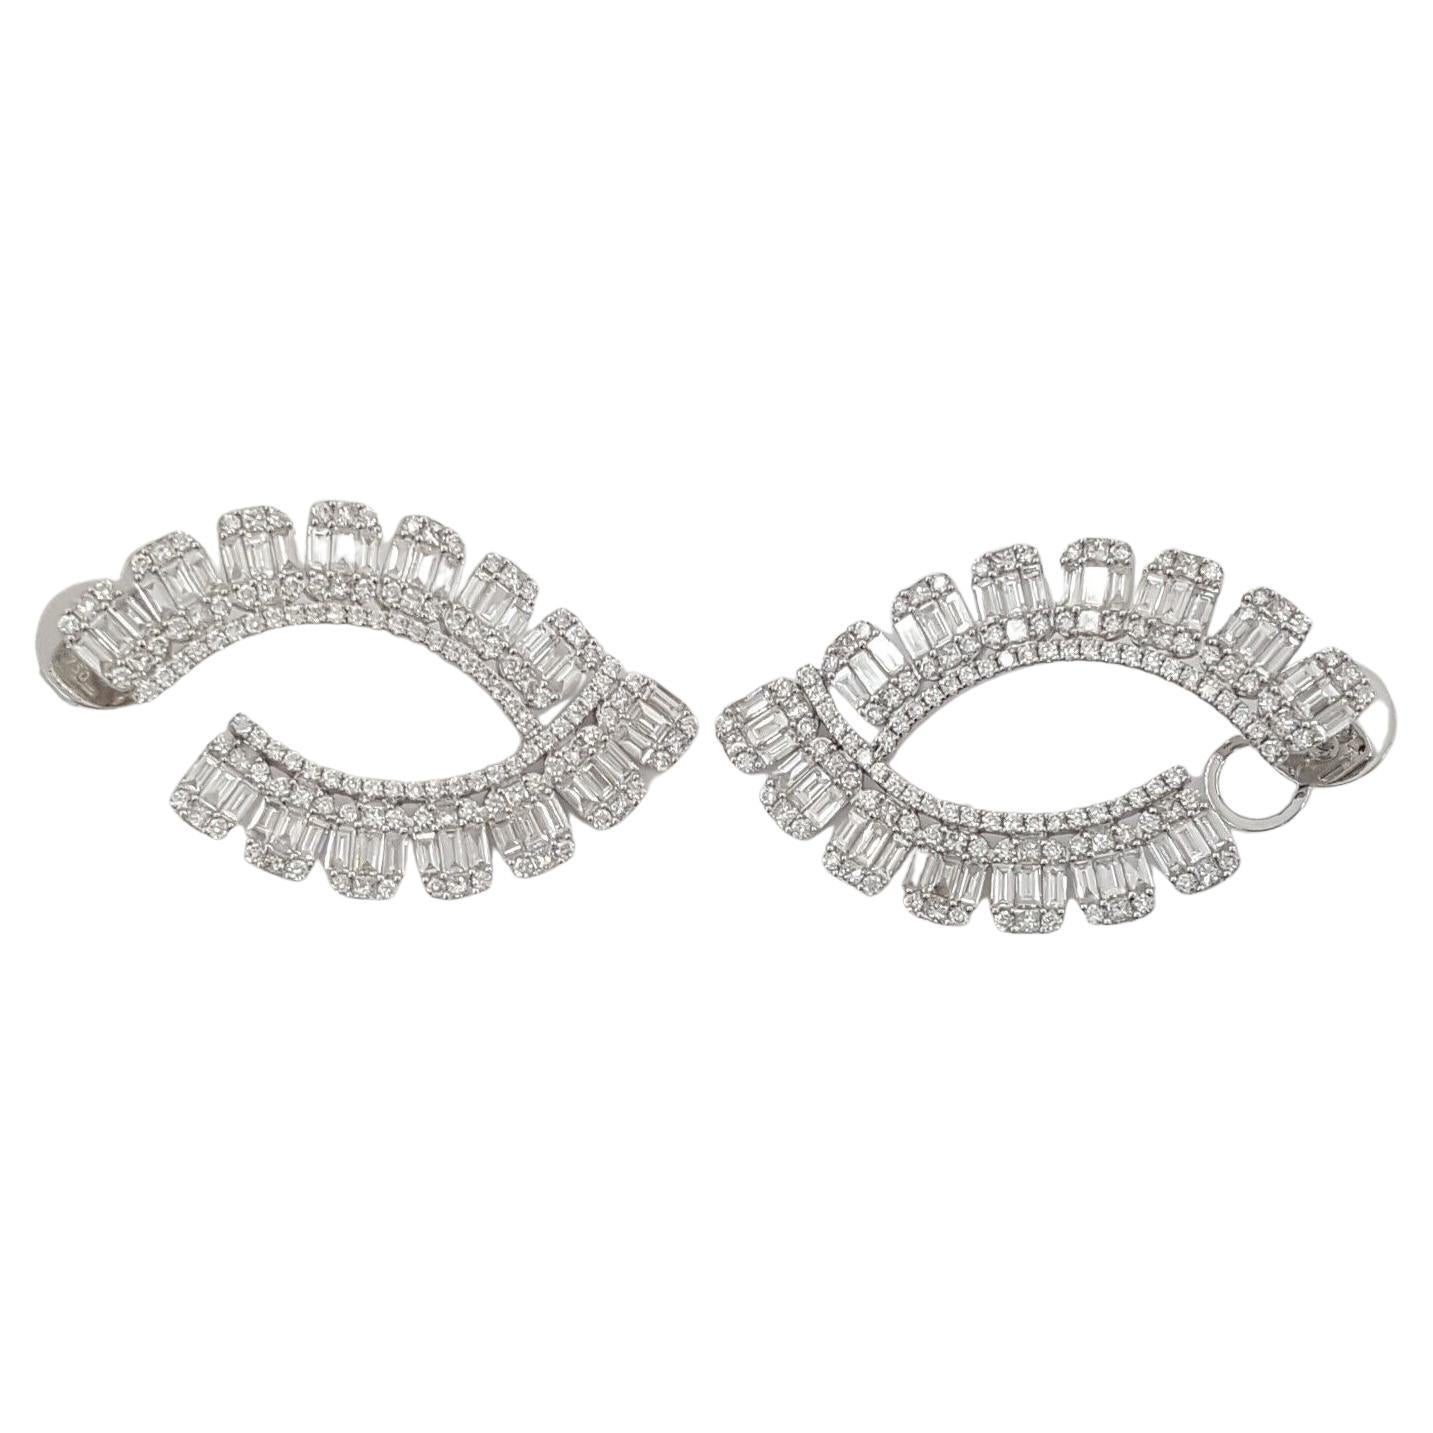 Ein exquisites Paar Baguette- und runde Brillantring-Ohrringe 



